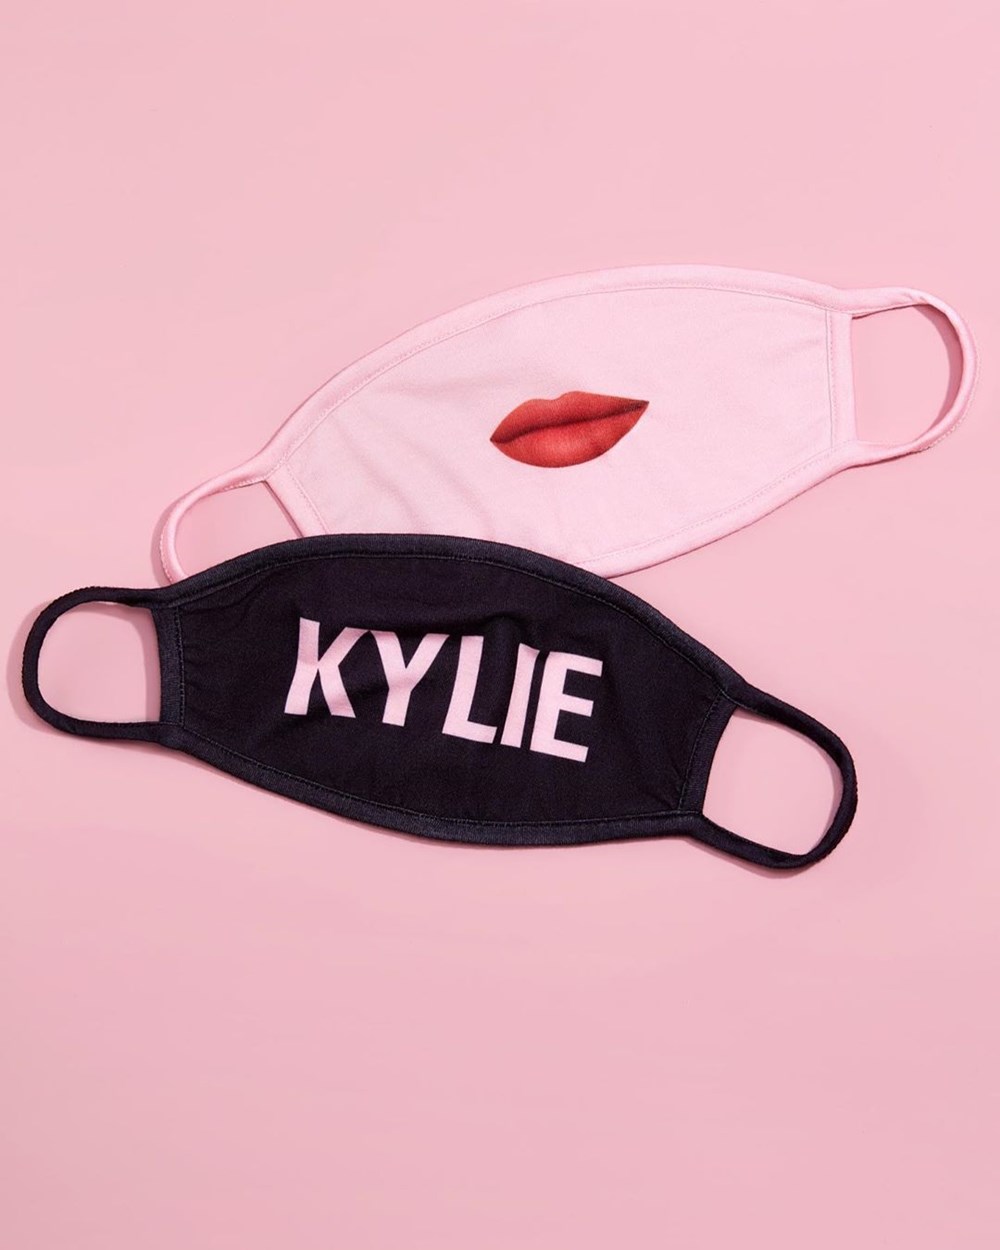 Kylie Jenner'ın markasından yüz maskesi - 4